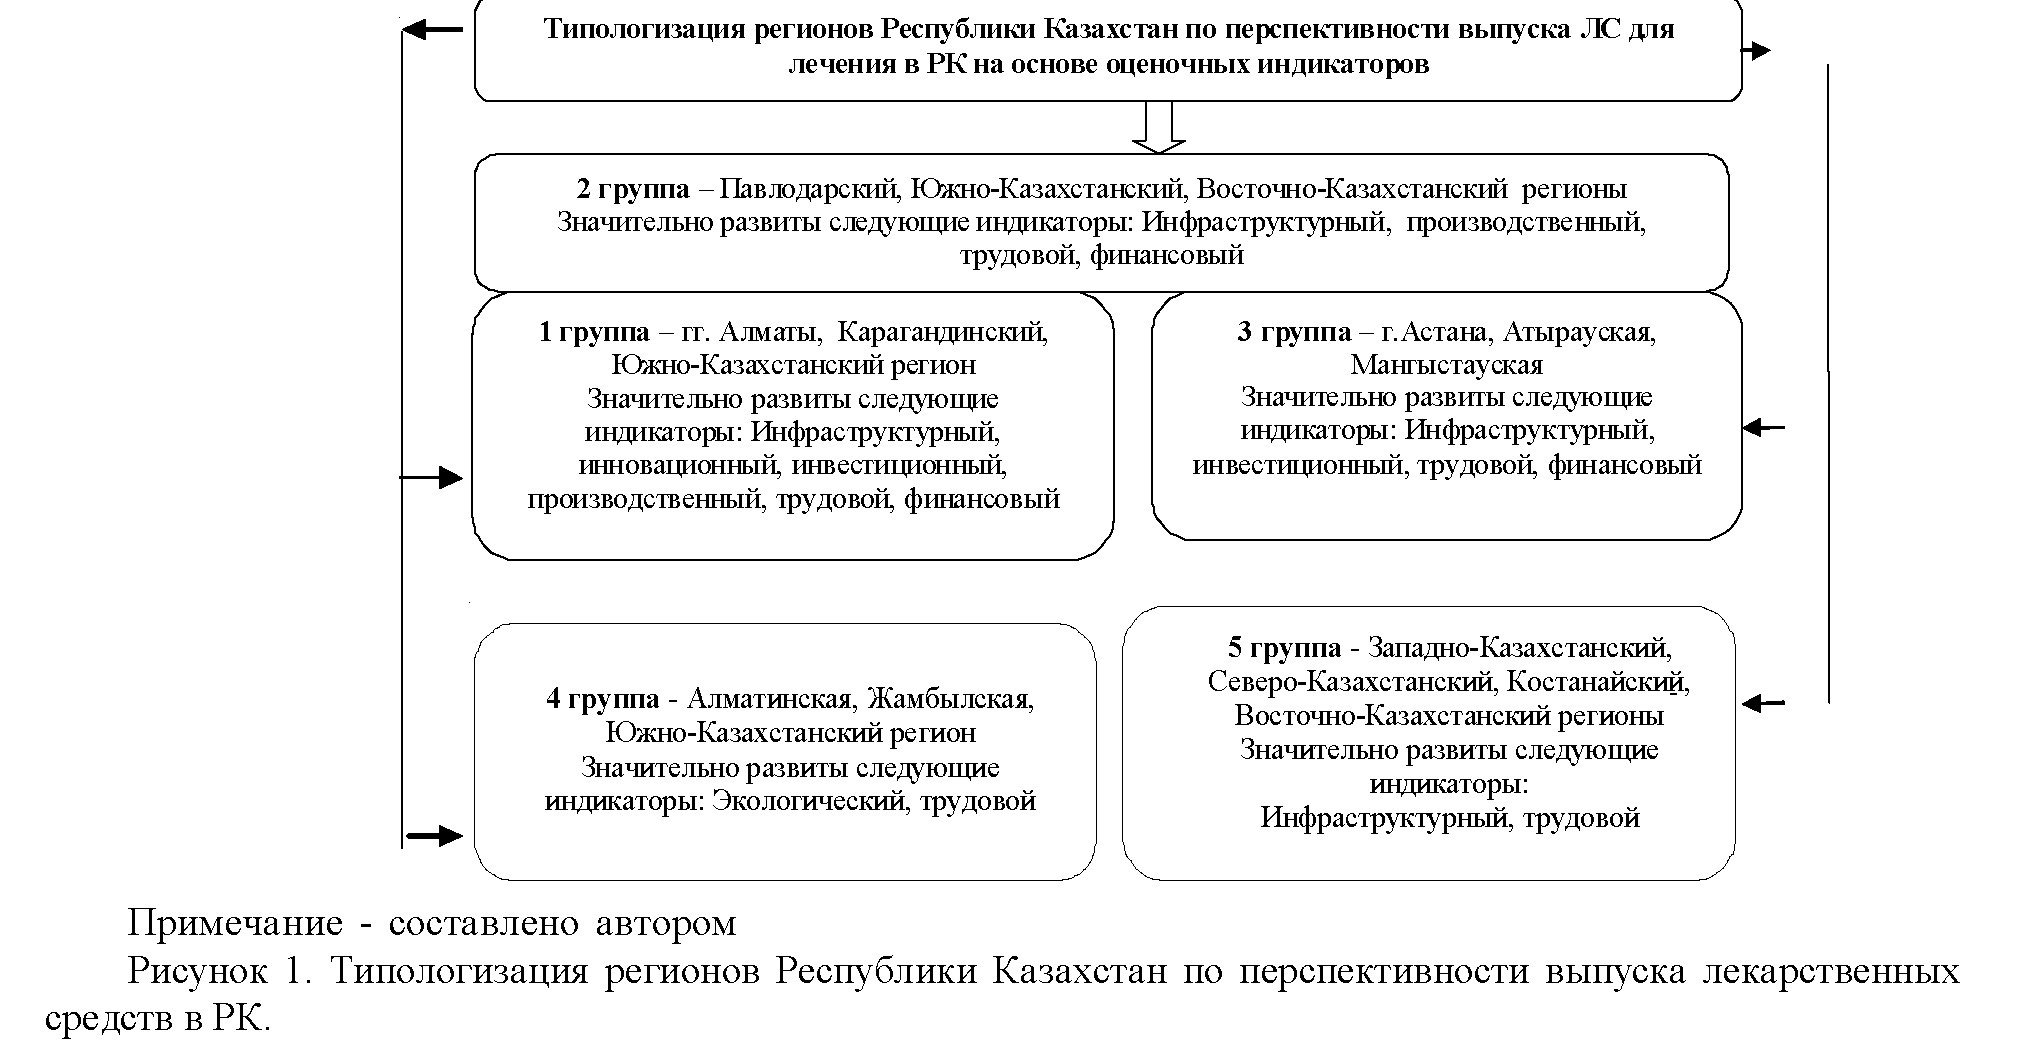 Состояние фармацевтической промышленности в республике Казахстан предприятий по регионам